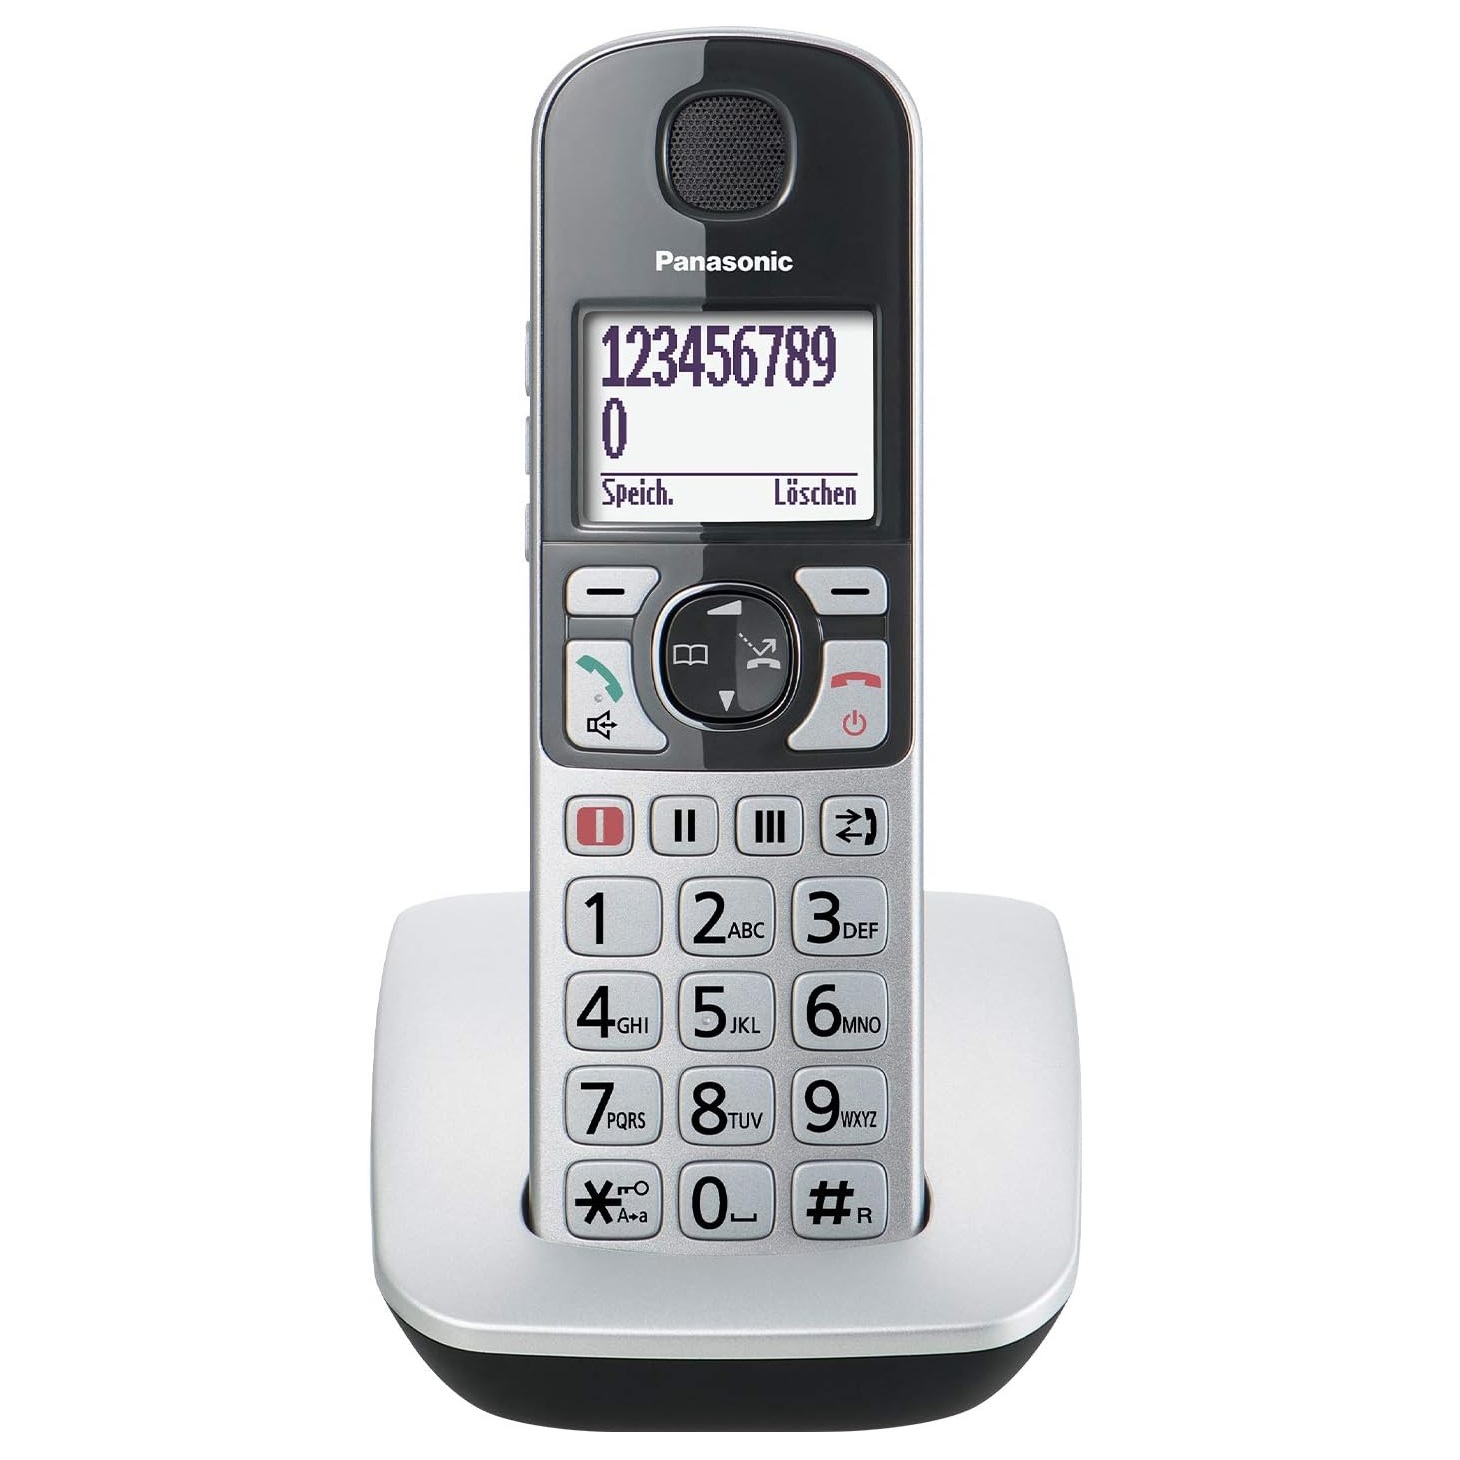 نکته خرید - قیمت روز تلفن پاناسونیک مدل KX-TGE510 خرید